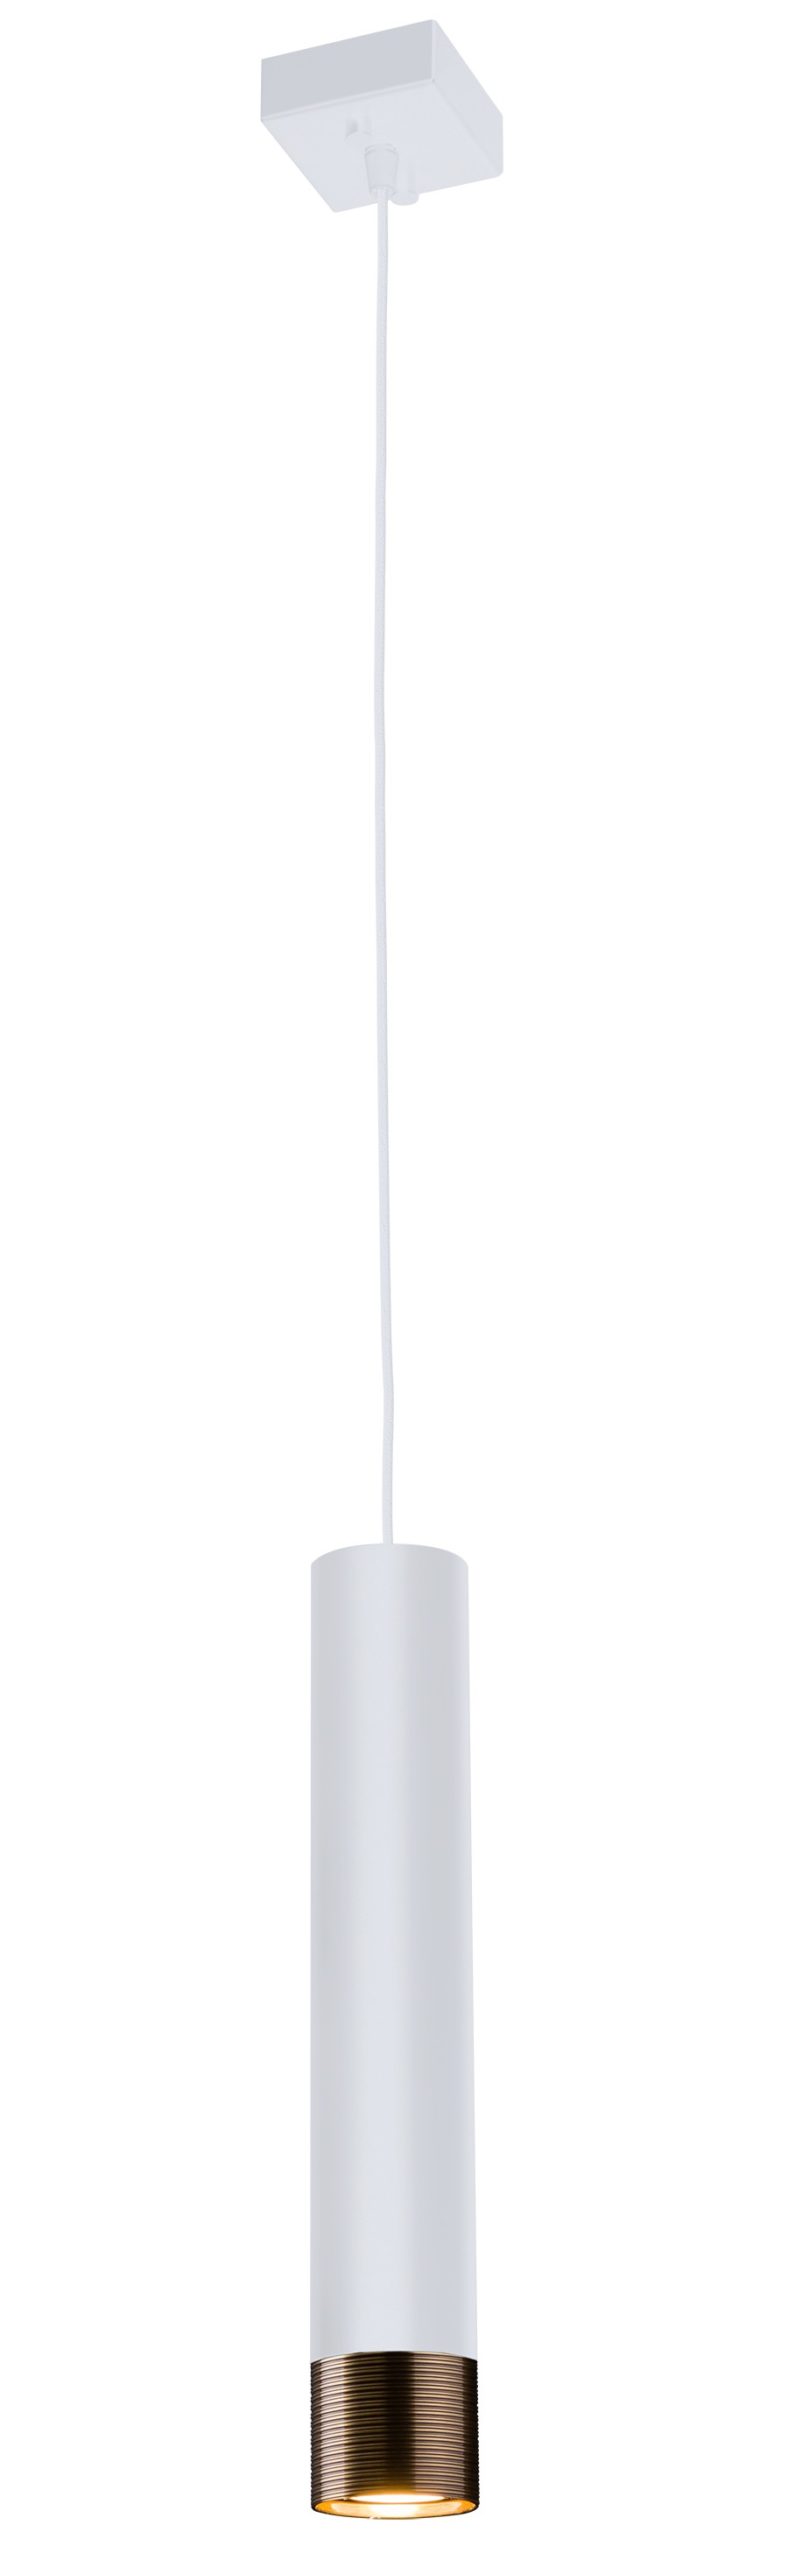 Lampa wisząca Eido 1, biała